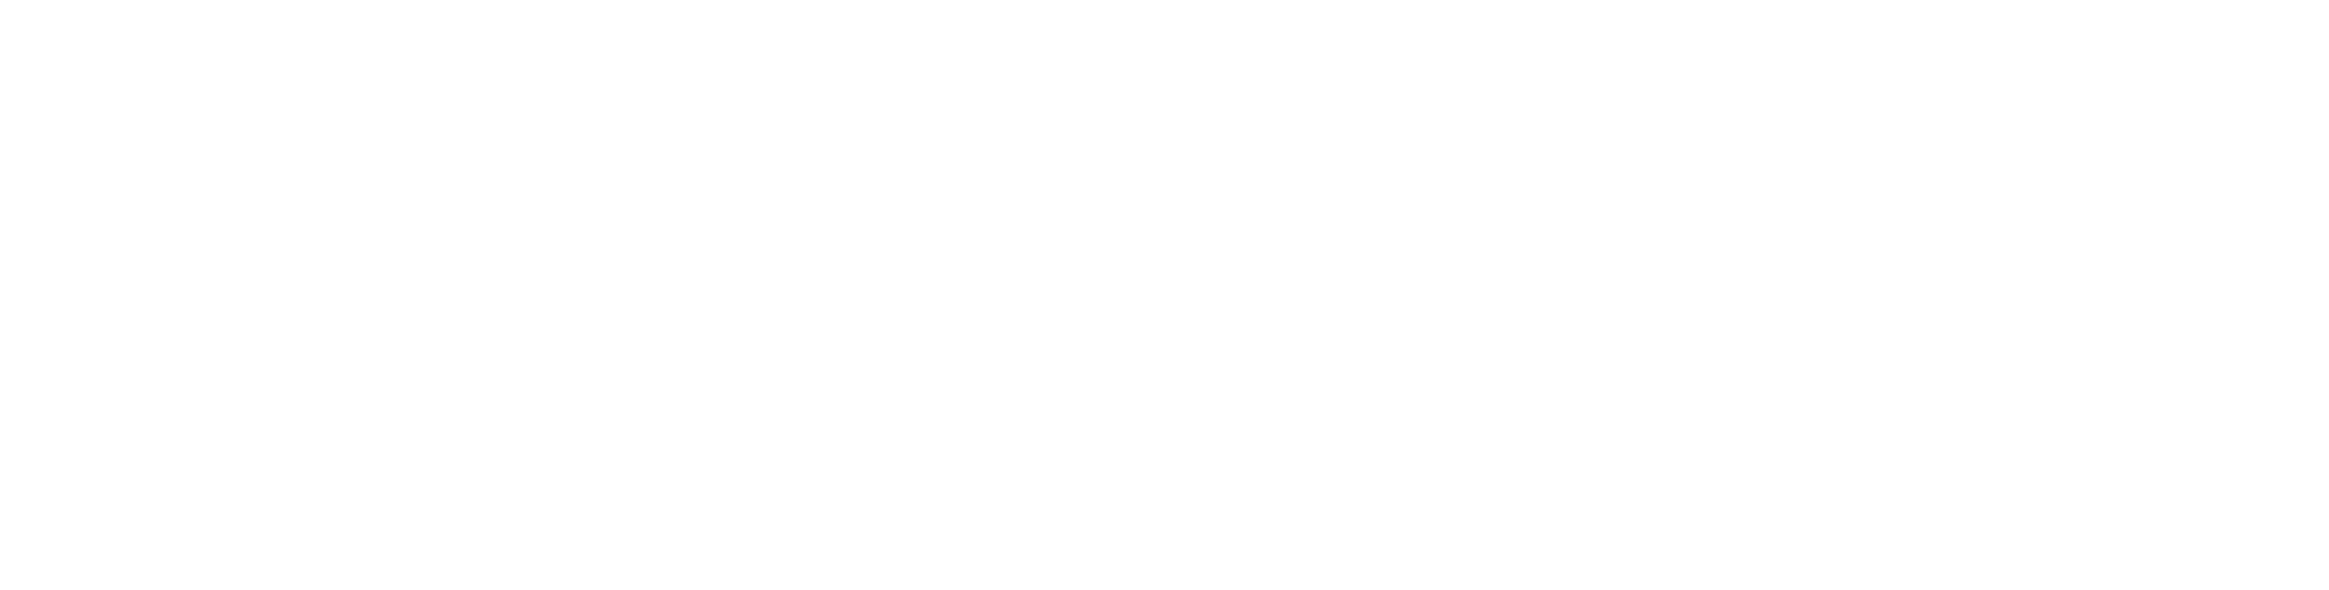 Suffolk Design logo